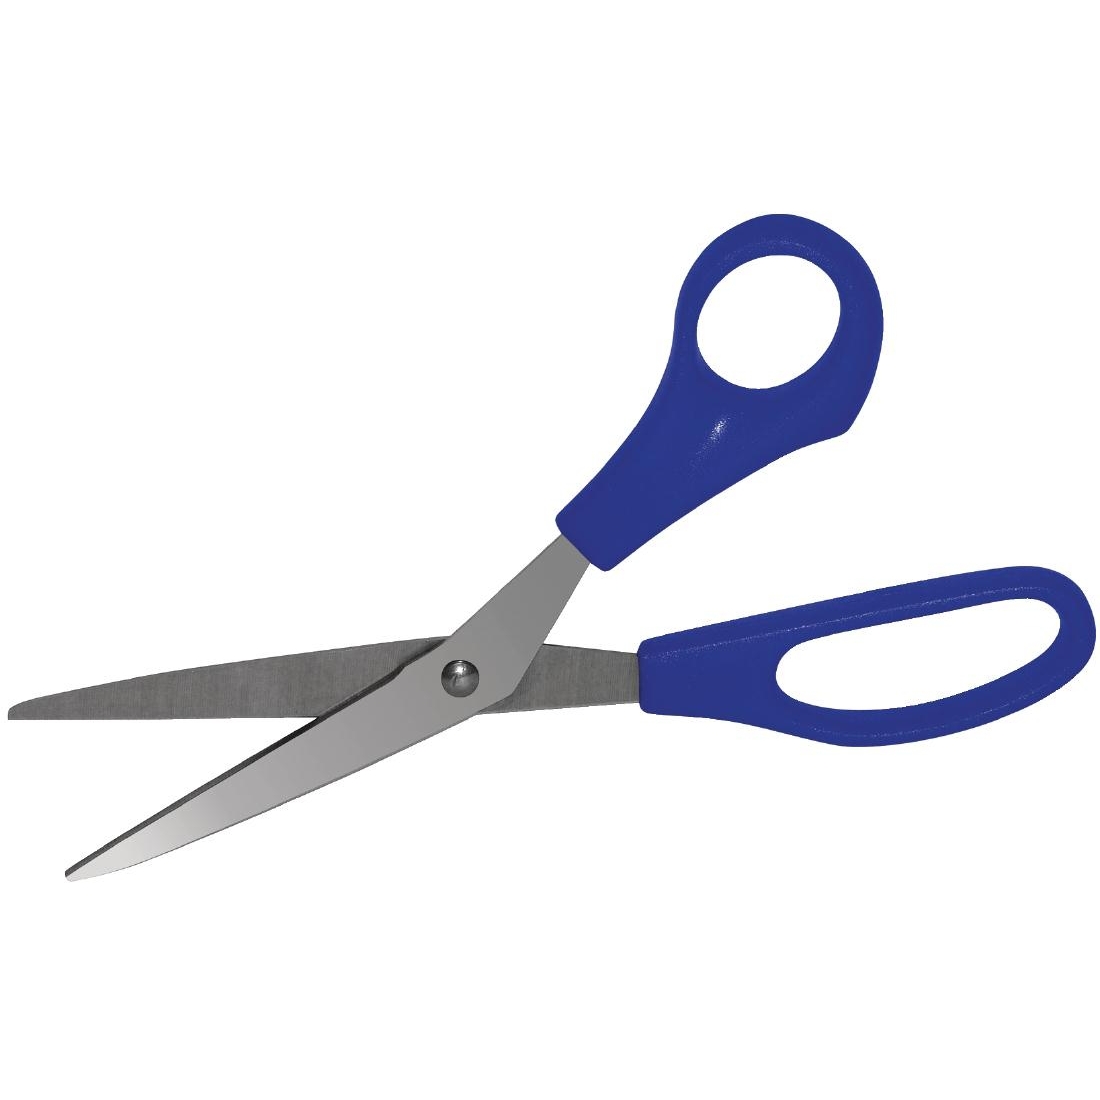 dm037_y_vogue-blue-scissors